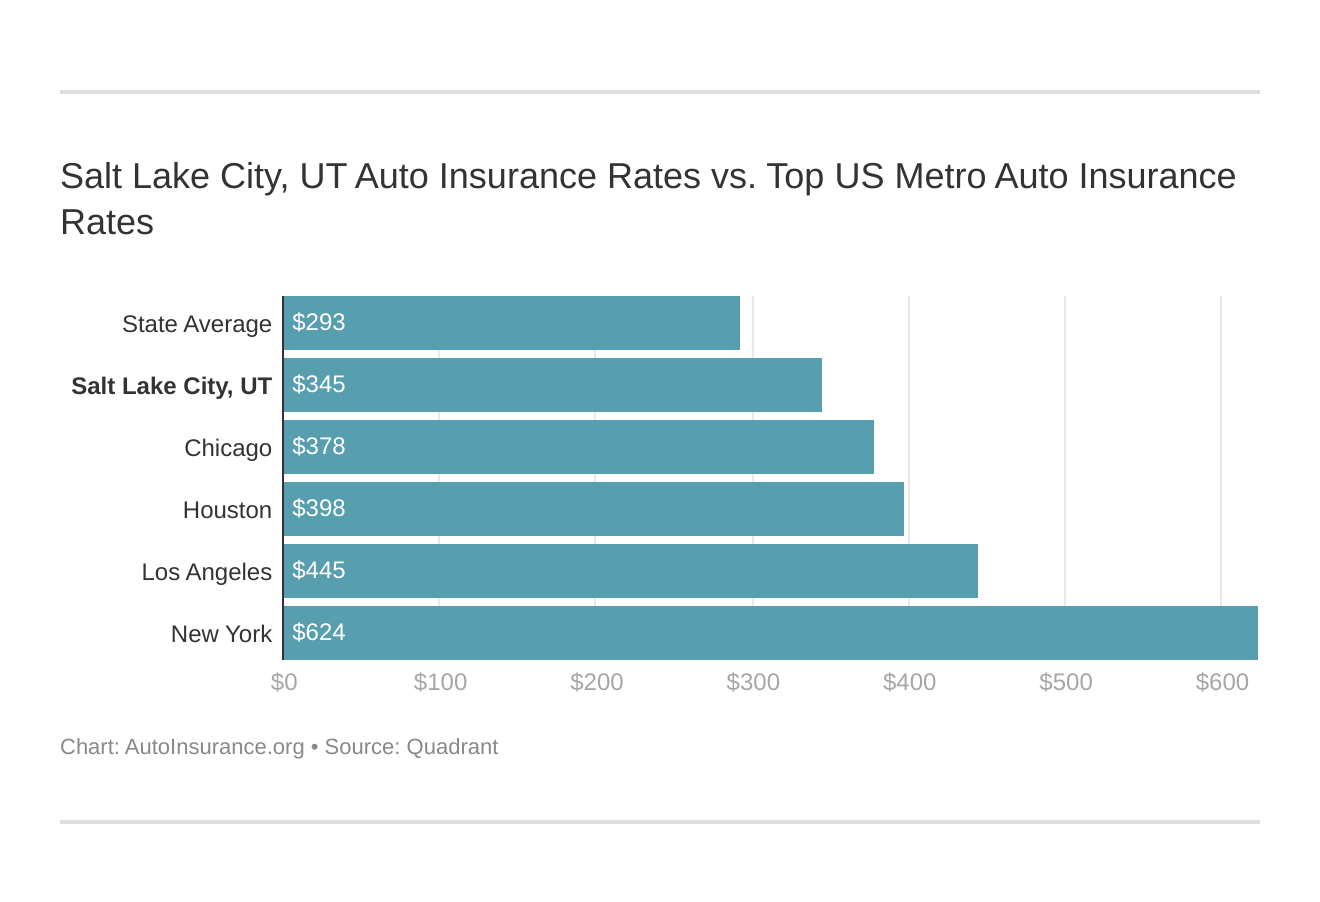 Salt Lake City, UT Auto Insurance Rates vs. Top US Metro Auto Insurance Rates